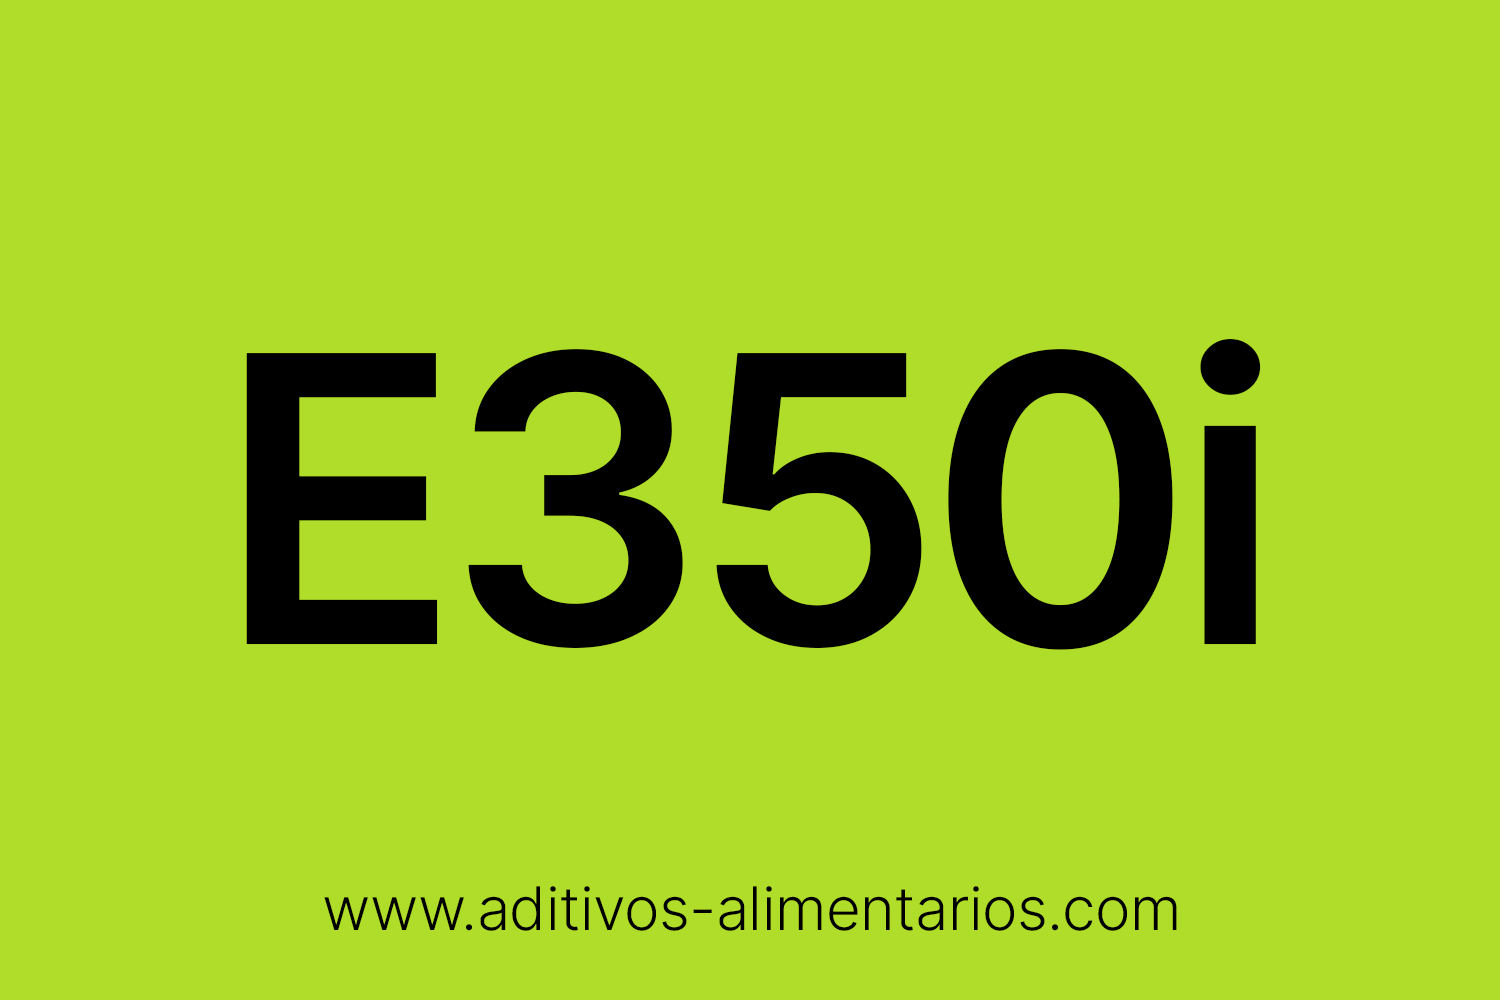 Aditivo Alimentario - E350i - Malato de Sodio